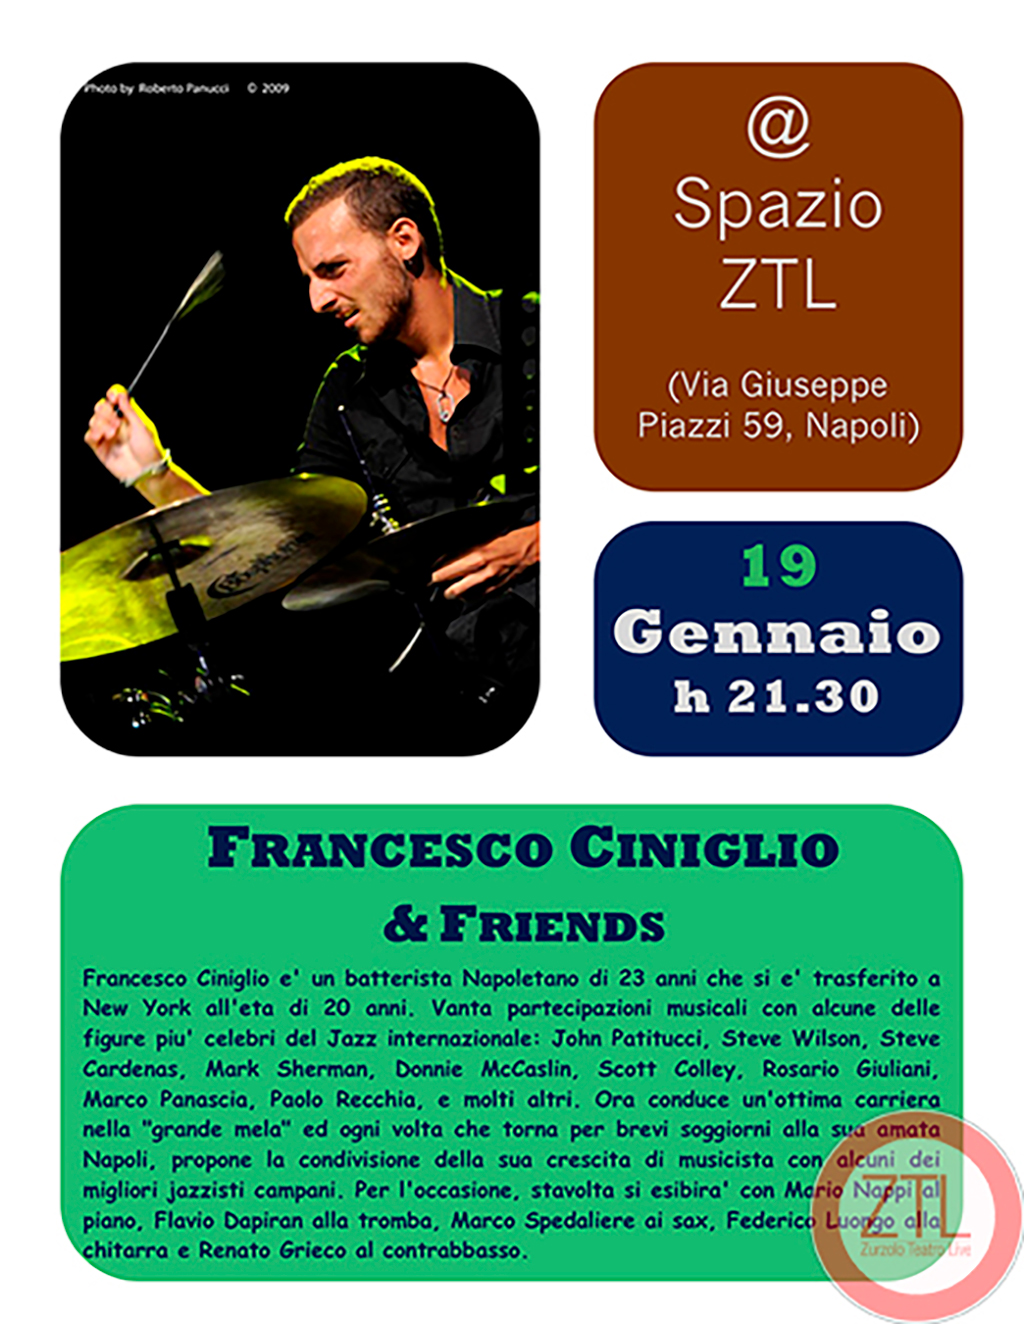 19/01/2013 – Francesco Ciniglio & Friends Show